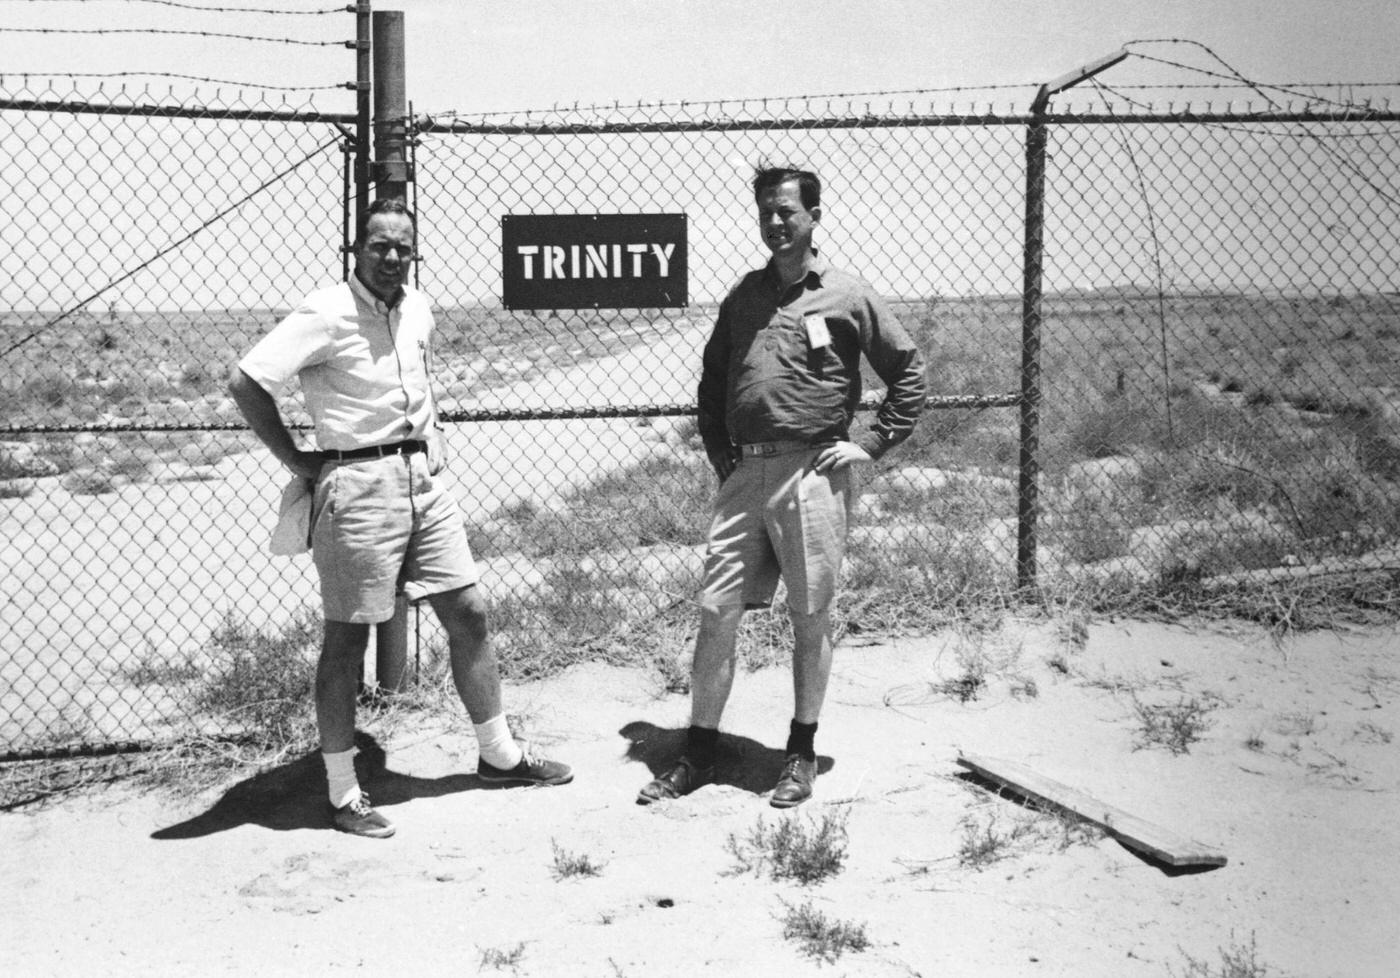 First Atom Bomb test site-Trinity, New Mexico